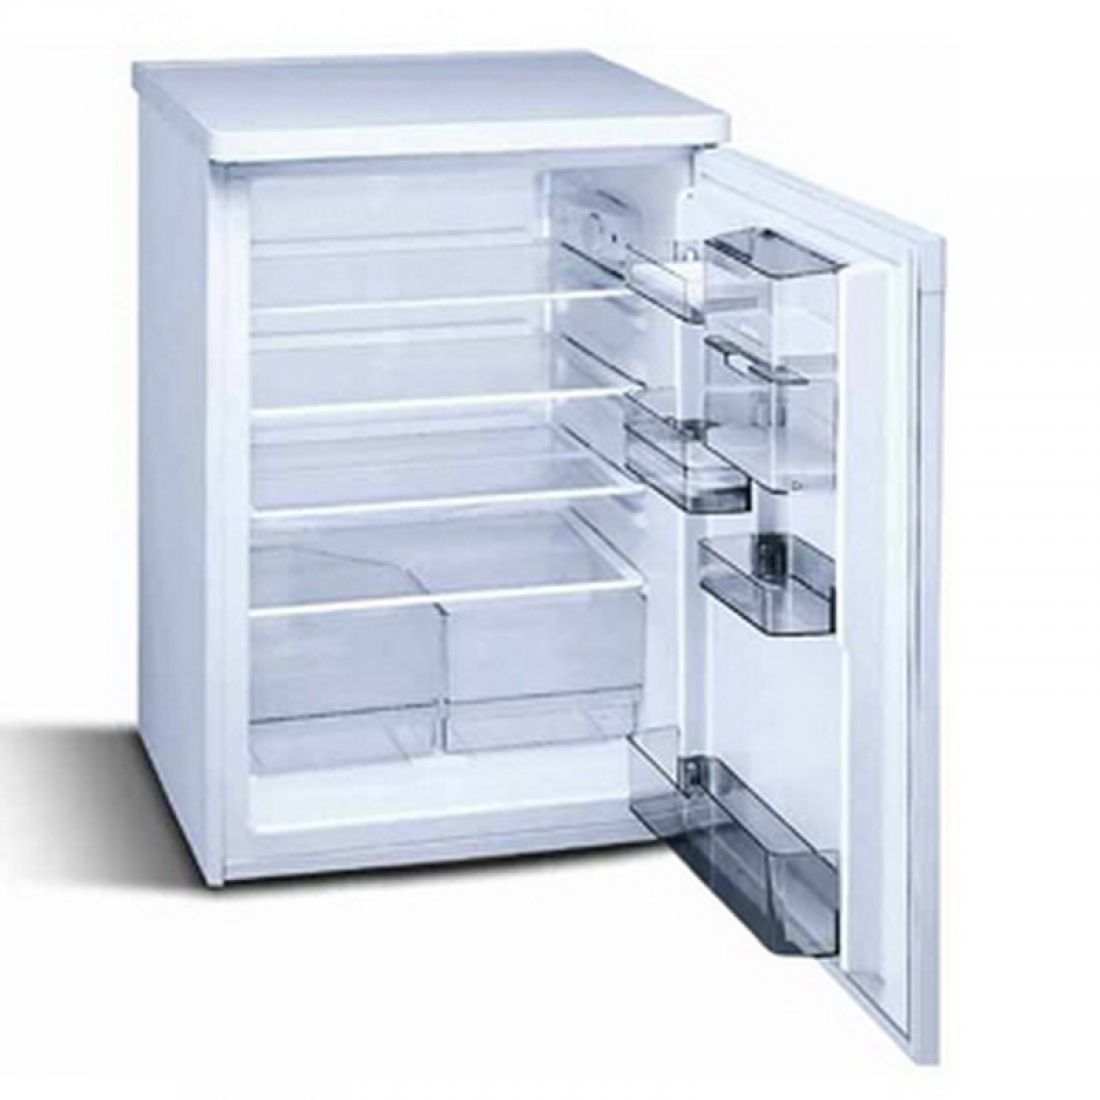 Produktkategorie: Kühlschränke (ohne Gefrierfach)